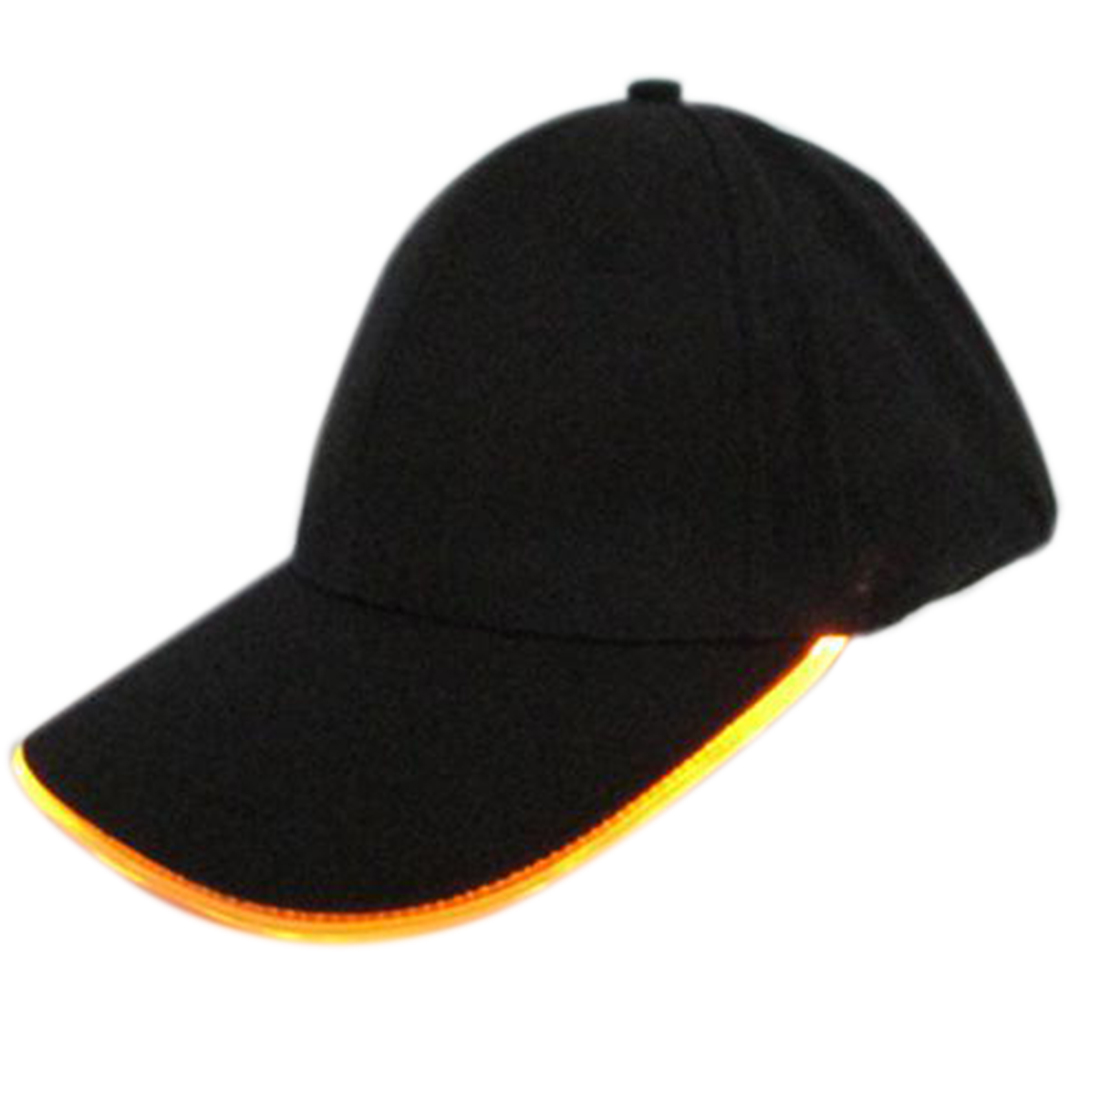 Led Light baseball hats Hot selling fashion caps , led baseball cap